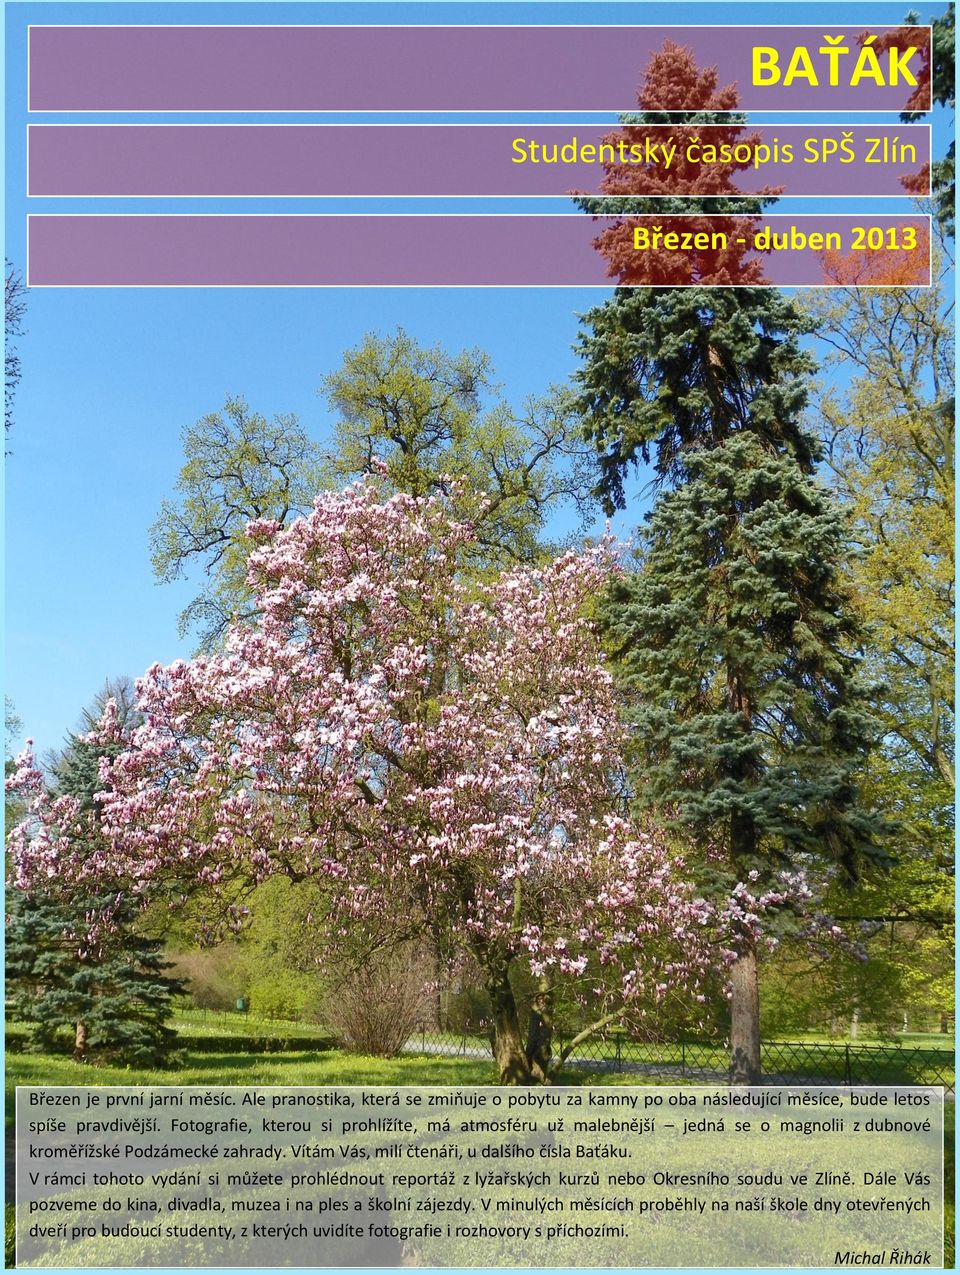 Fotografie, kterou si prohlížíte, má atmosféru už malebnější jedná se o magnolii z dubnové kroměřížské Podzámecké zahrady. Vítám Vás, milí čtenáři, u dalšího čísla Baťáku.